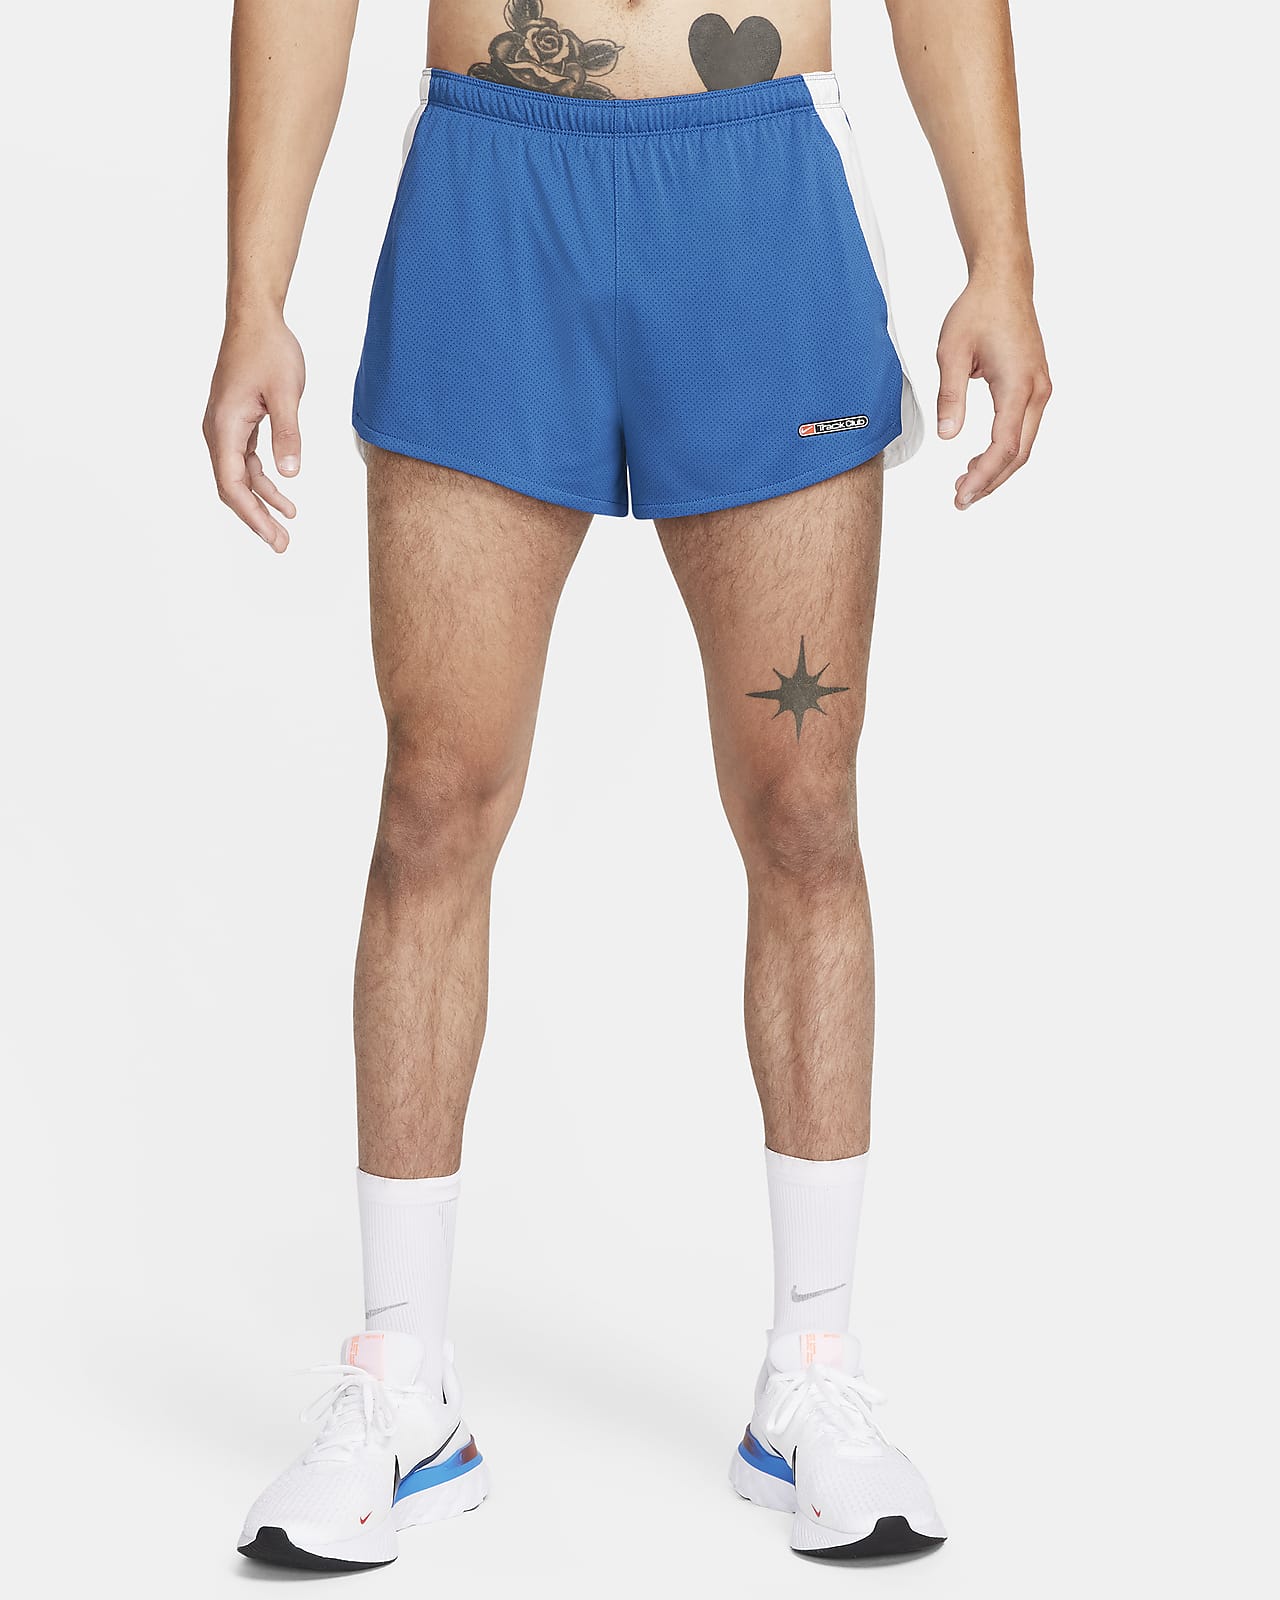 Nike Track Club Pantalons curts Dri-FIT amb eslip incorporat de 8 cm de running - Home